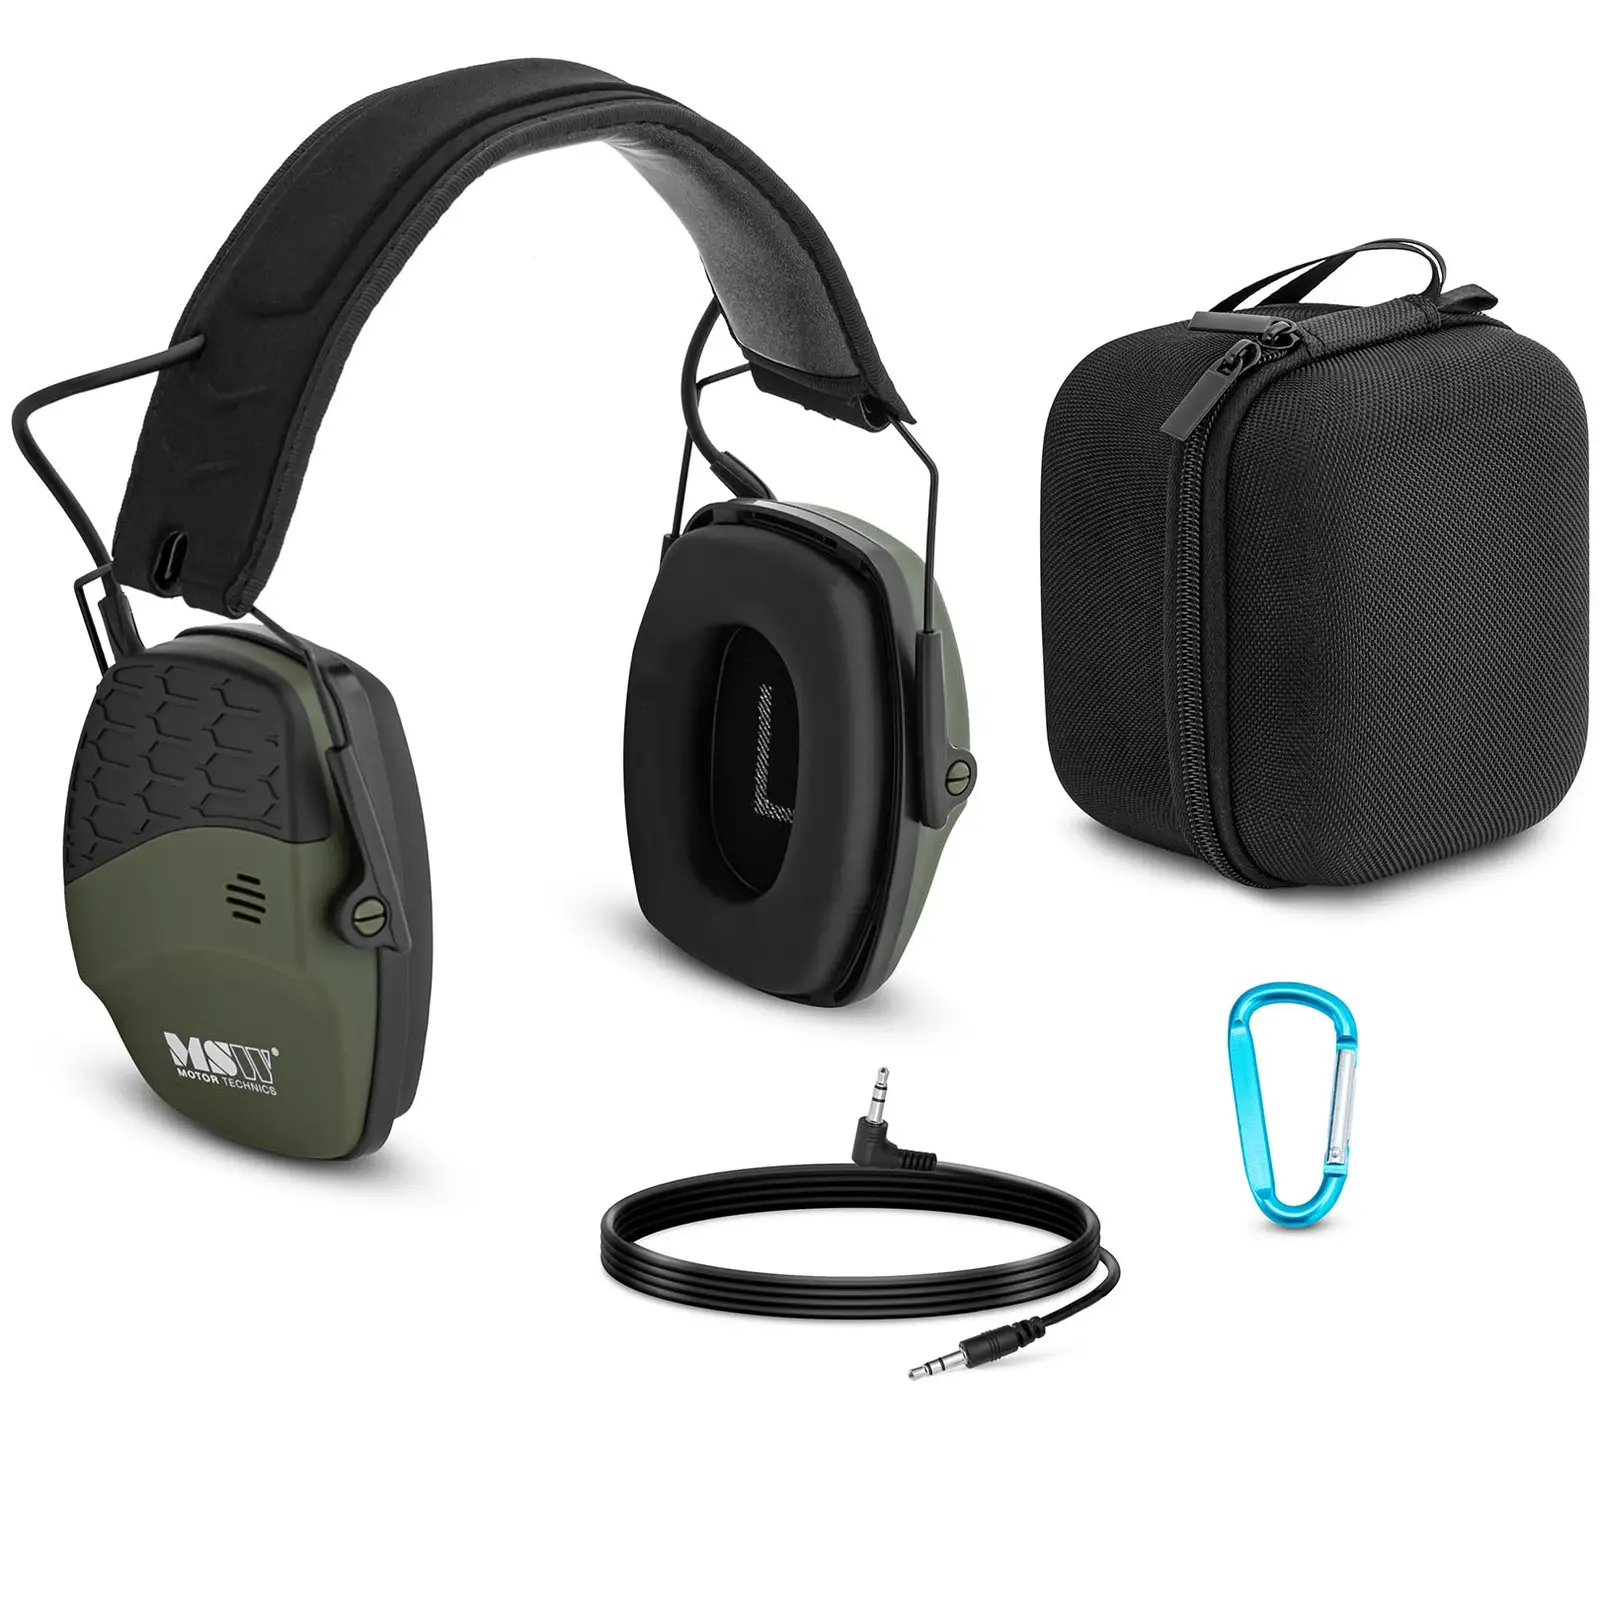 Ακουστικά ακύρωσης θορύβου Bluetooth - Δυναμικός εξωτερικός έλεγχος θορύβου - Πράσινο